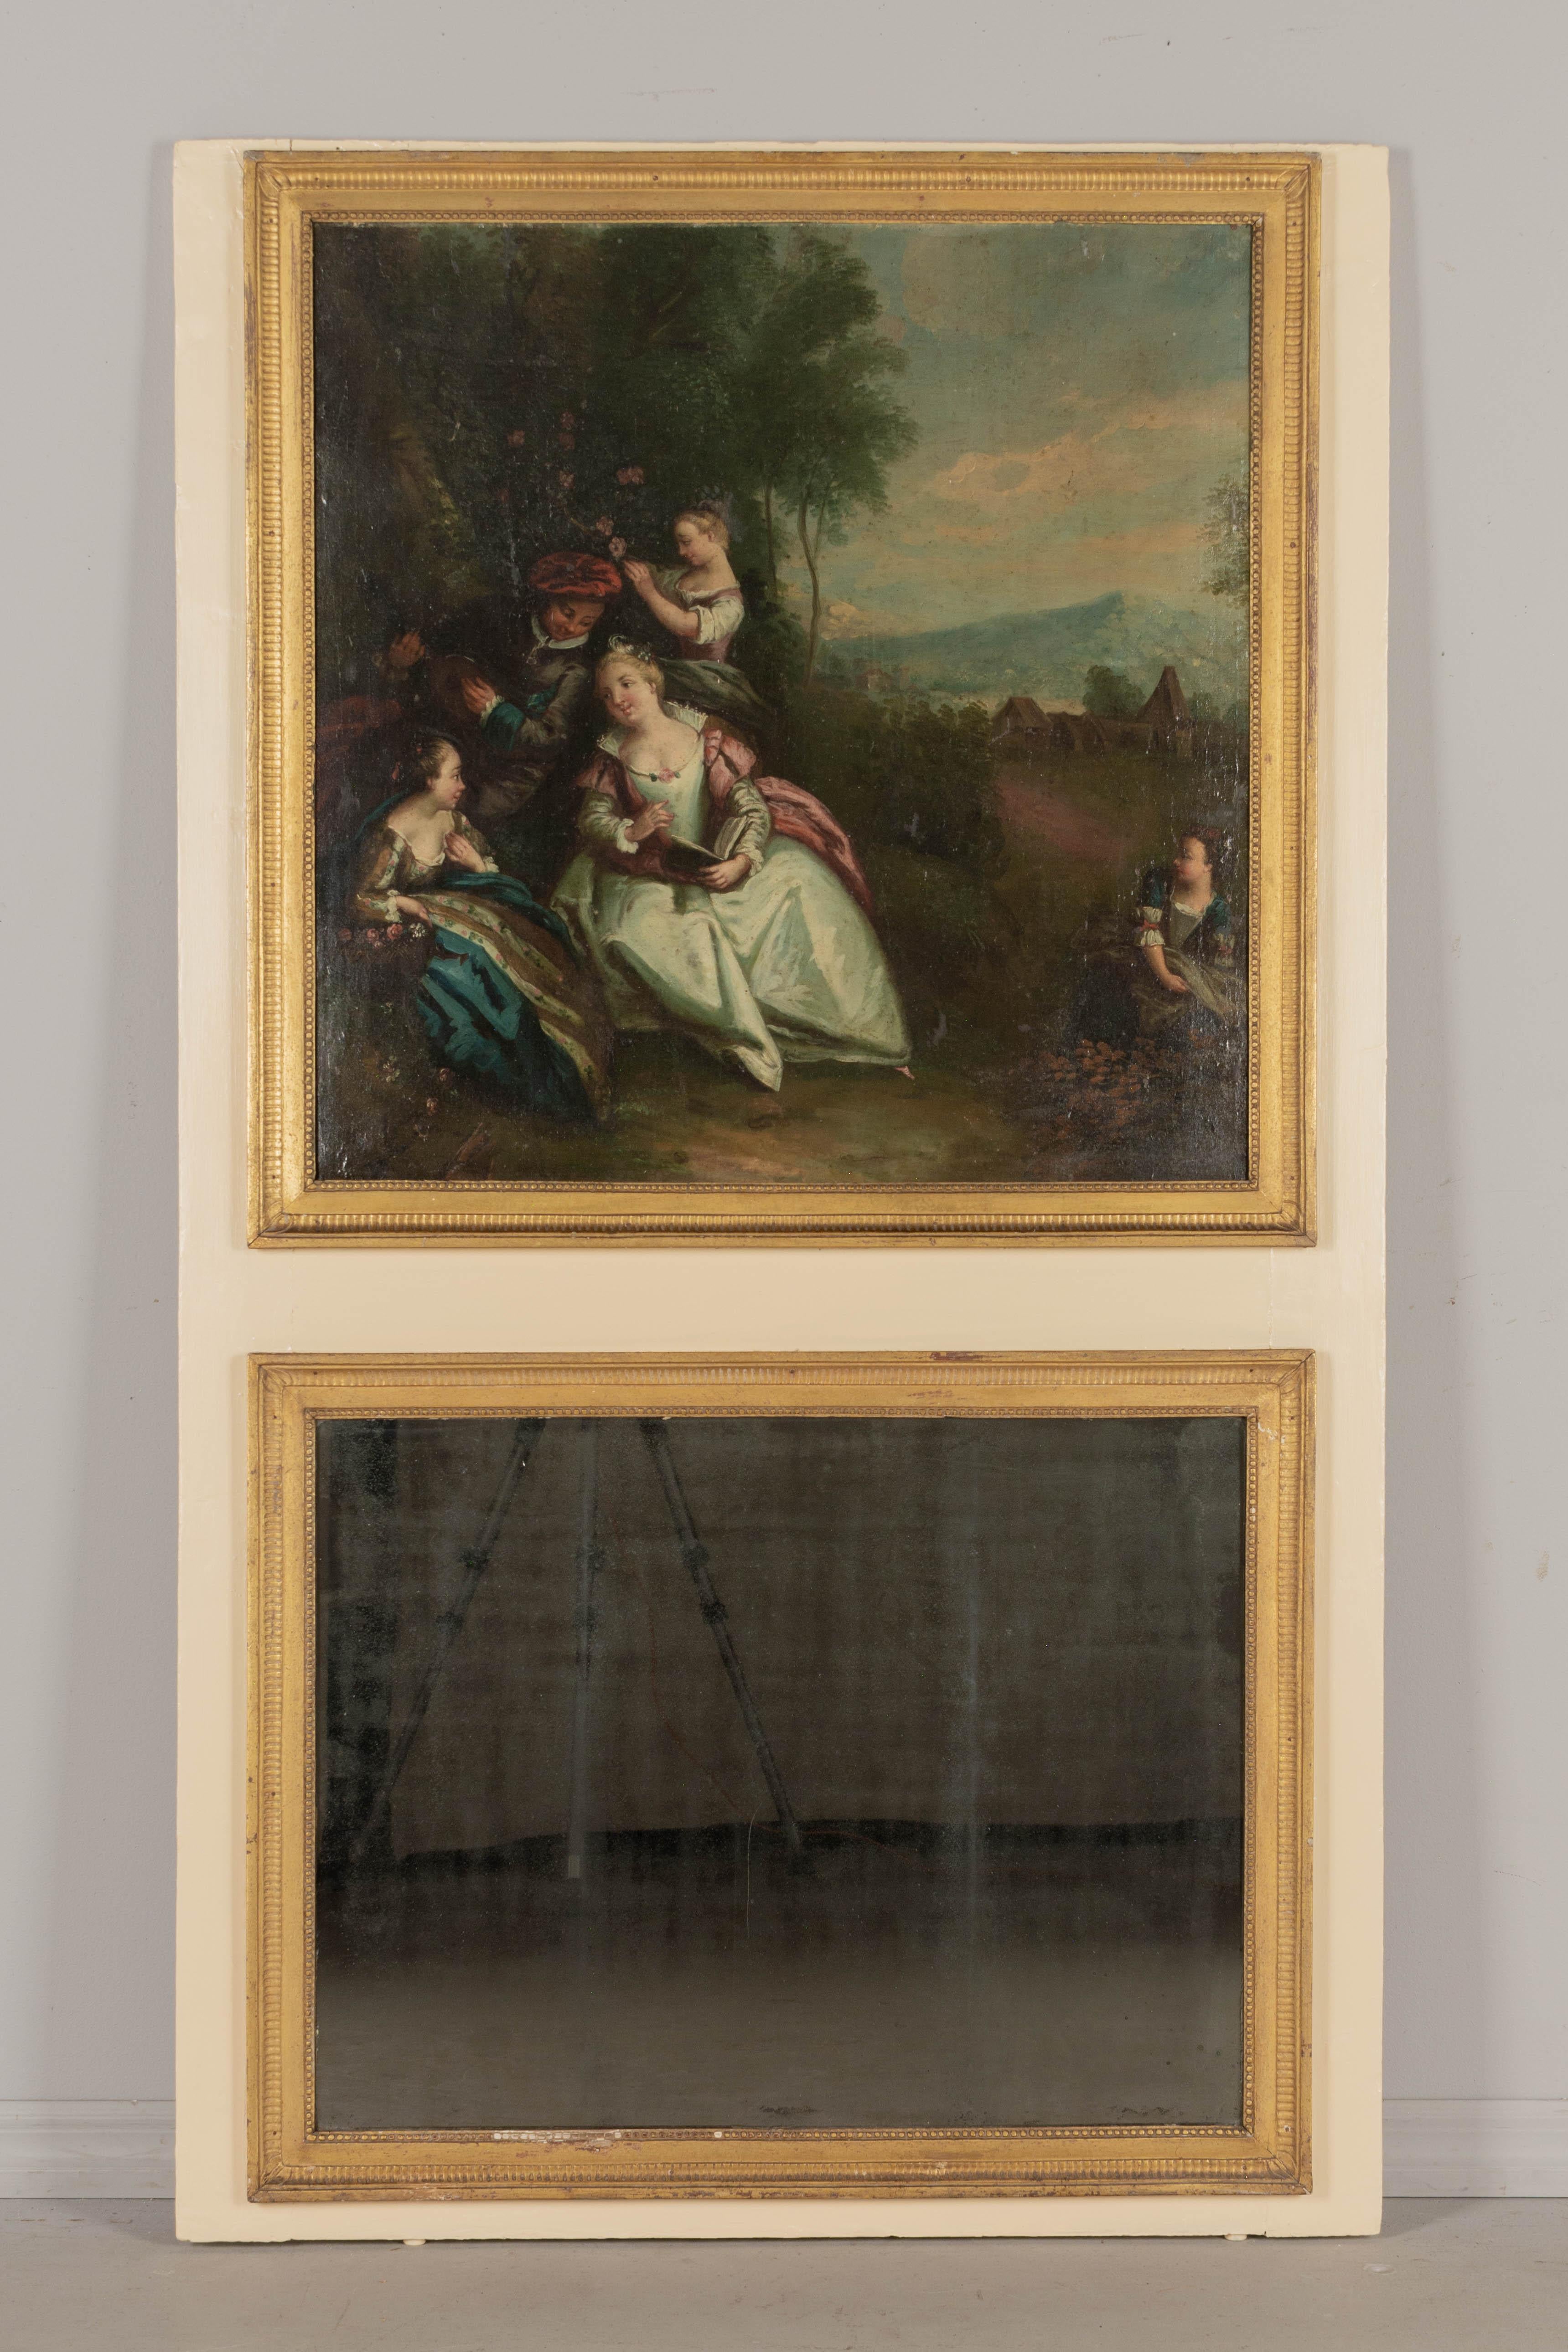 Miroir trumeau de style Louis XV français du début du XIXe siècle, orné d'une belle peinture à l'huile représentant une scène de cour pastorale. Cadre en pin peint avec bordure décorative en bois doré. Miroir d'origine avec argenture ancienne. Ce